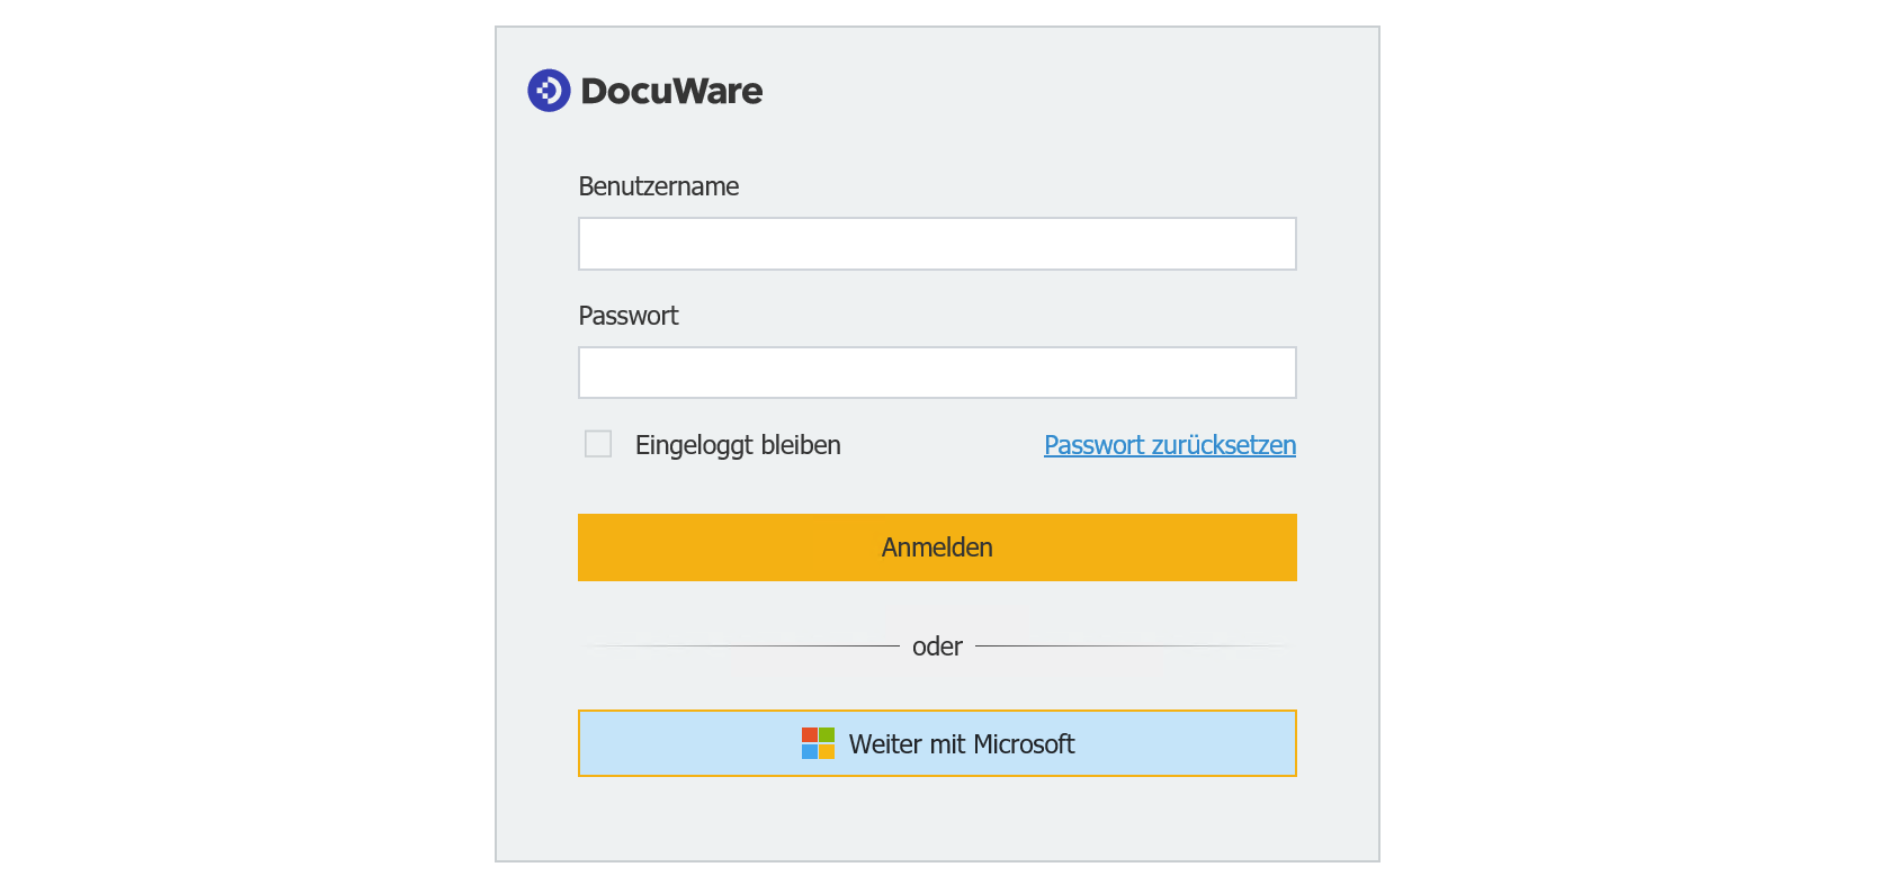 Login-Dialog in DocuWare: Mit „Weiter mit Microsoft“ werden Sie per Identity Provider automatisch in DocuWare angemeldet.